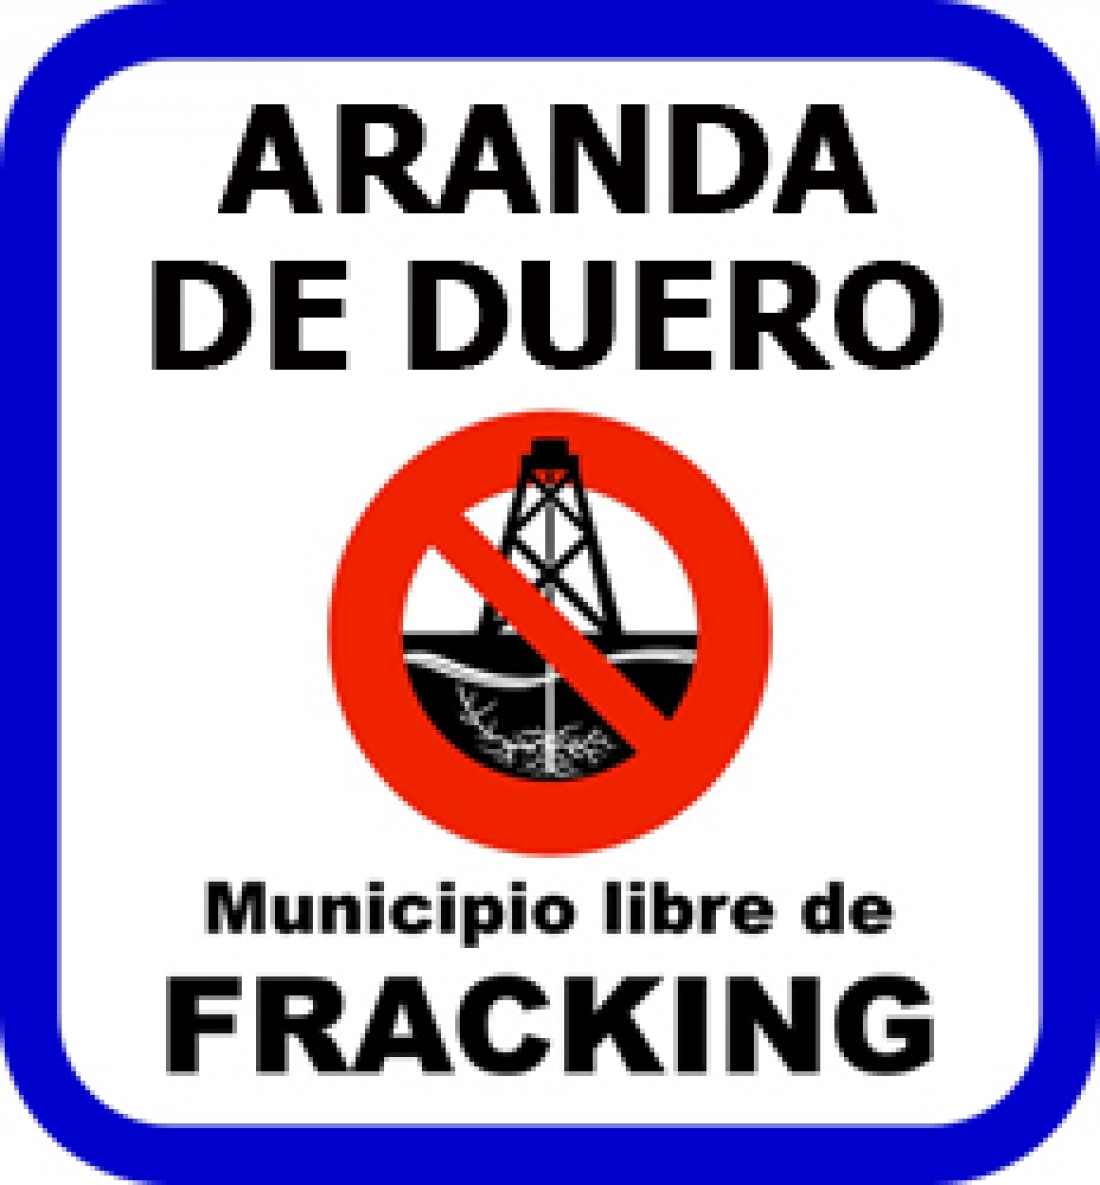 Aranda, municipio libre de fracking.